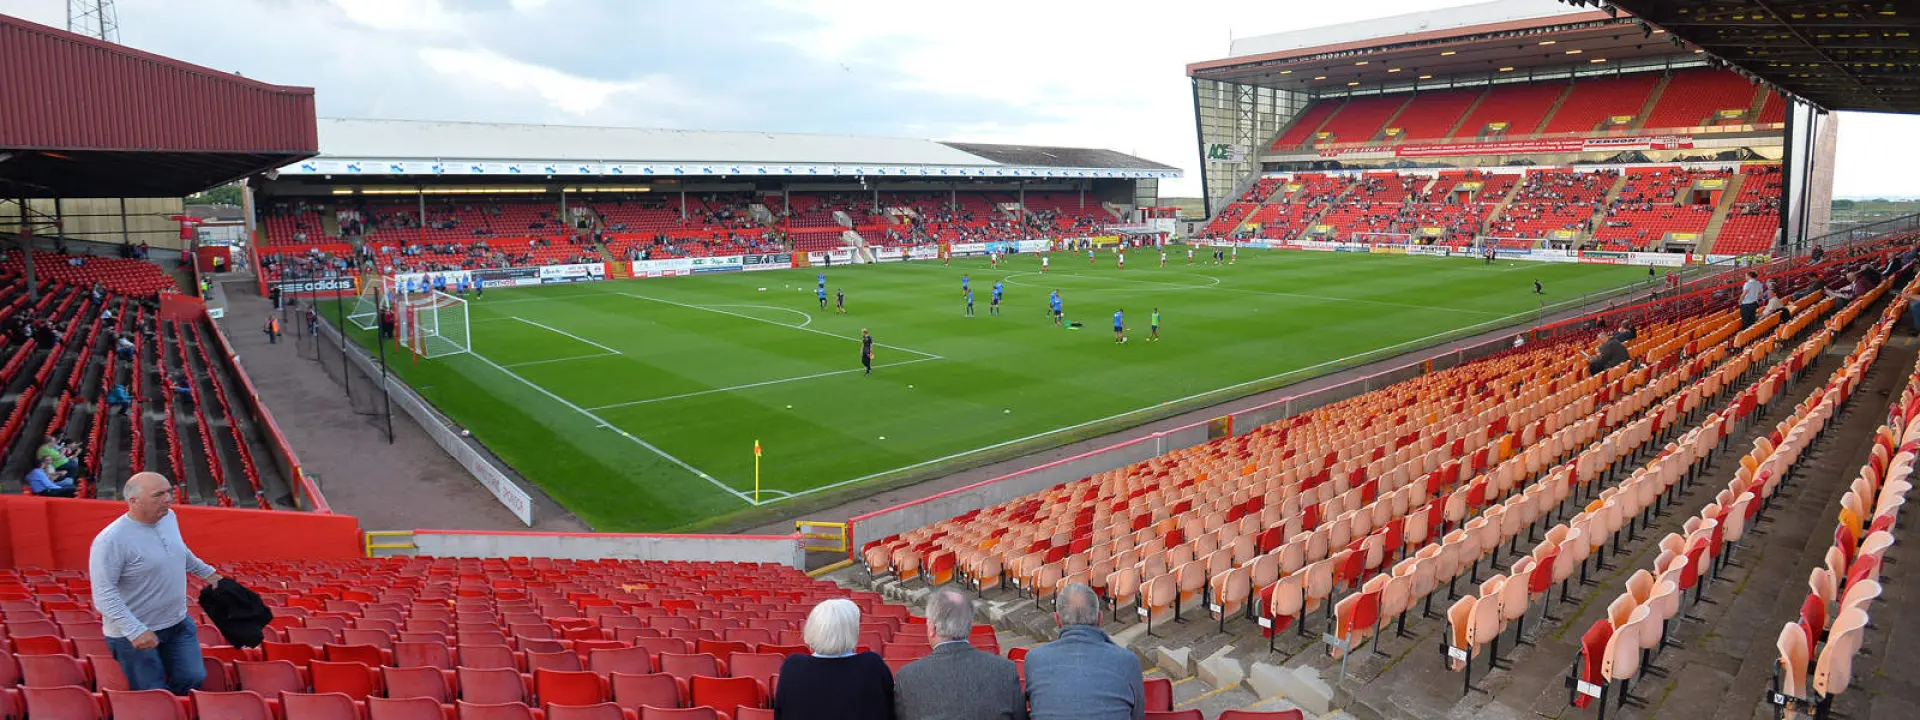 Aberdeen home ground Pittodrie